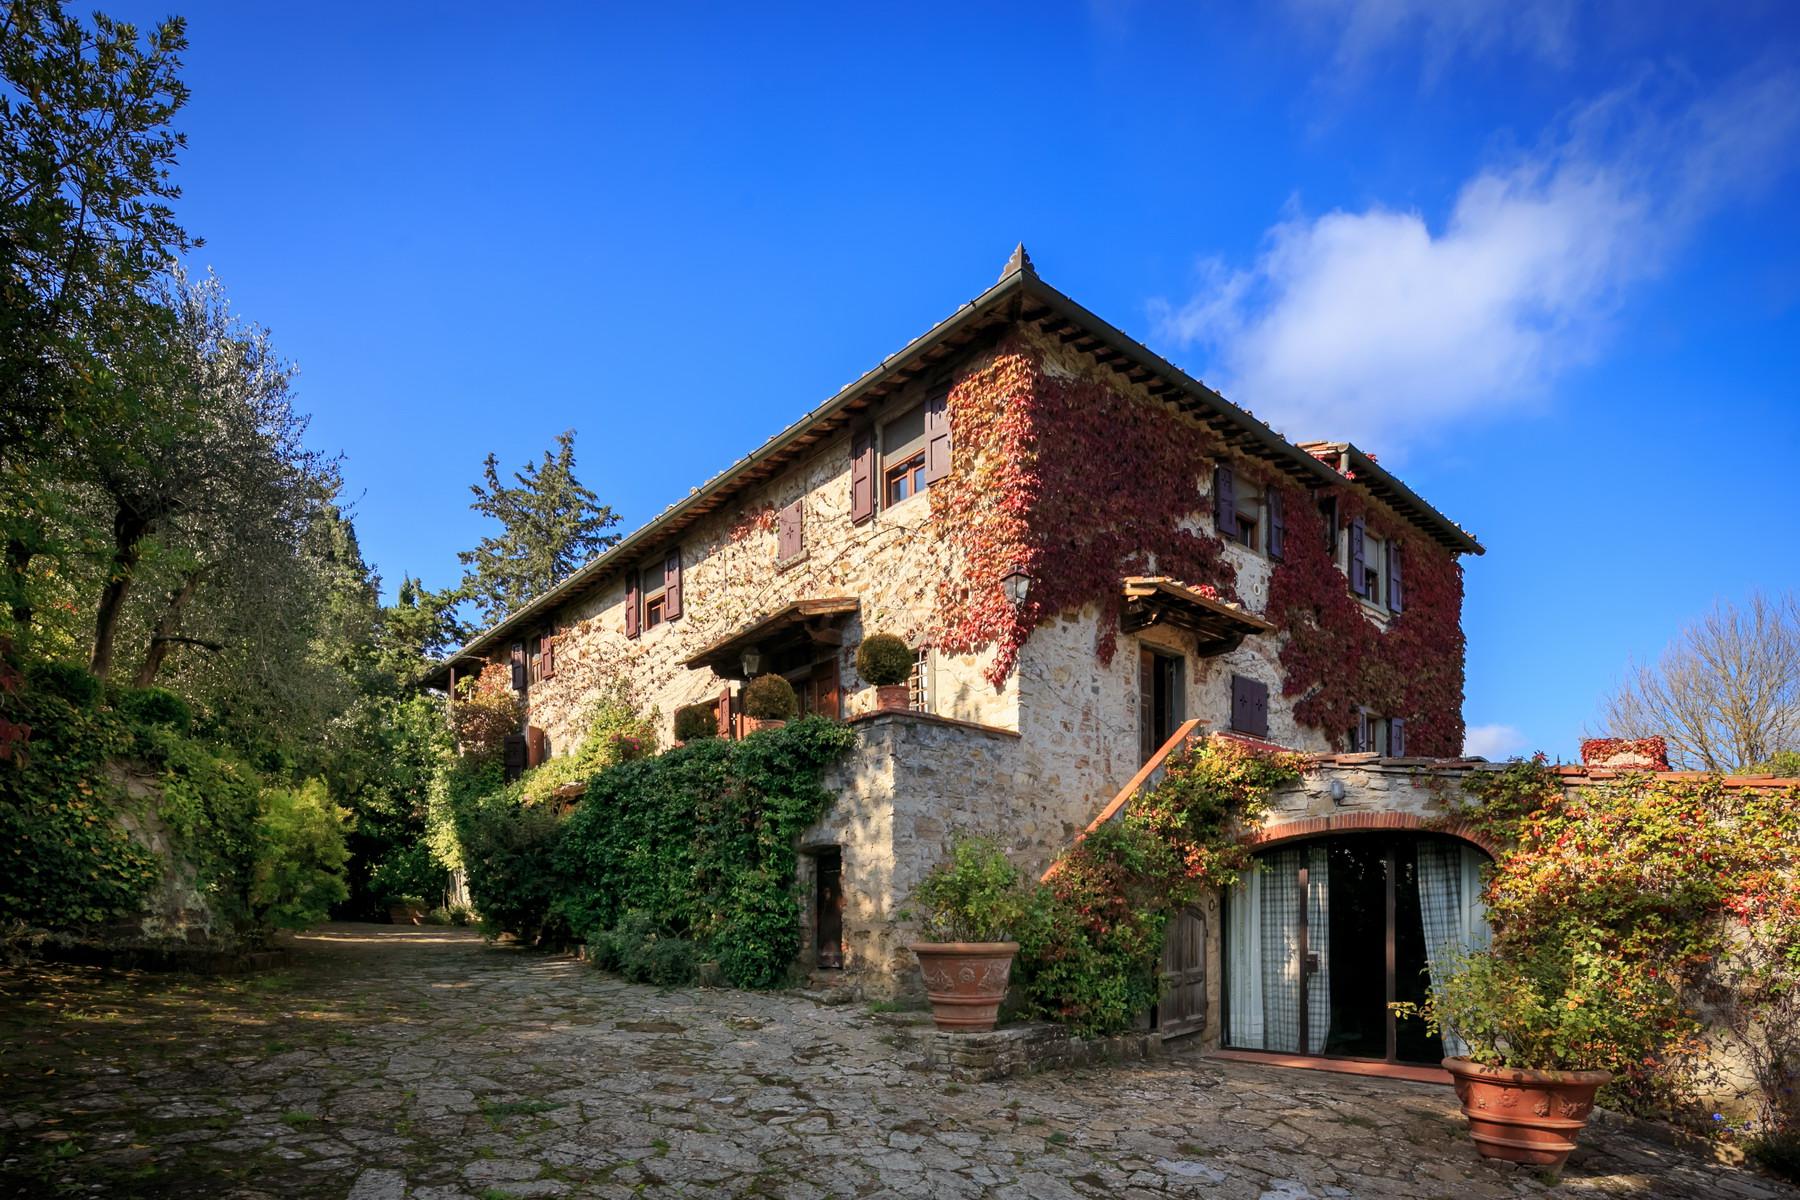 Wunderschönes Bauernhaus auf den Chianti Hügeln - 12